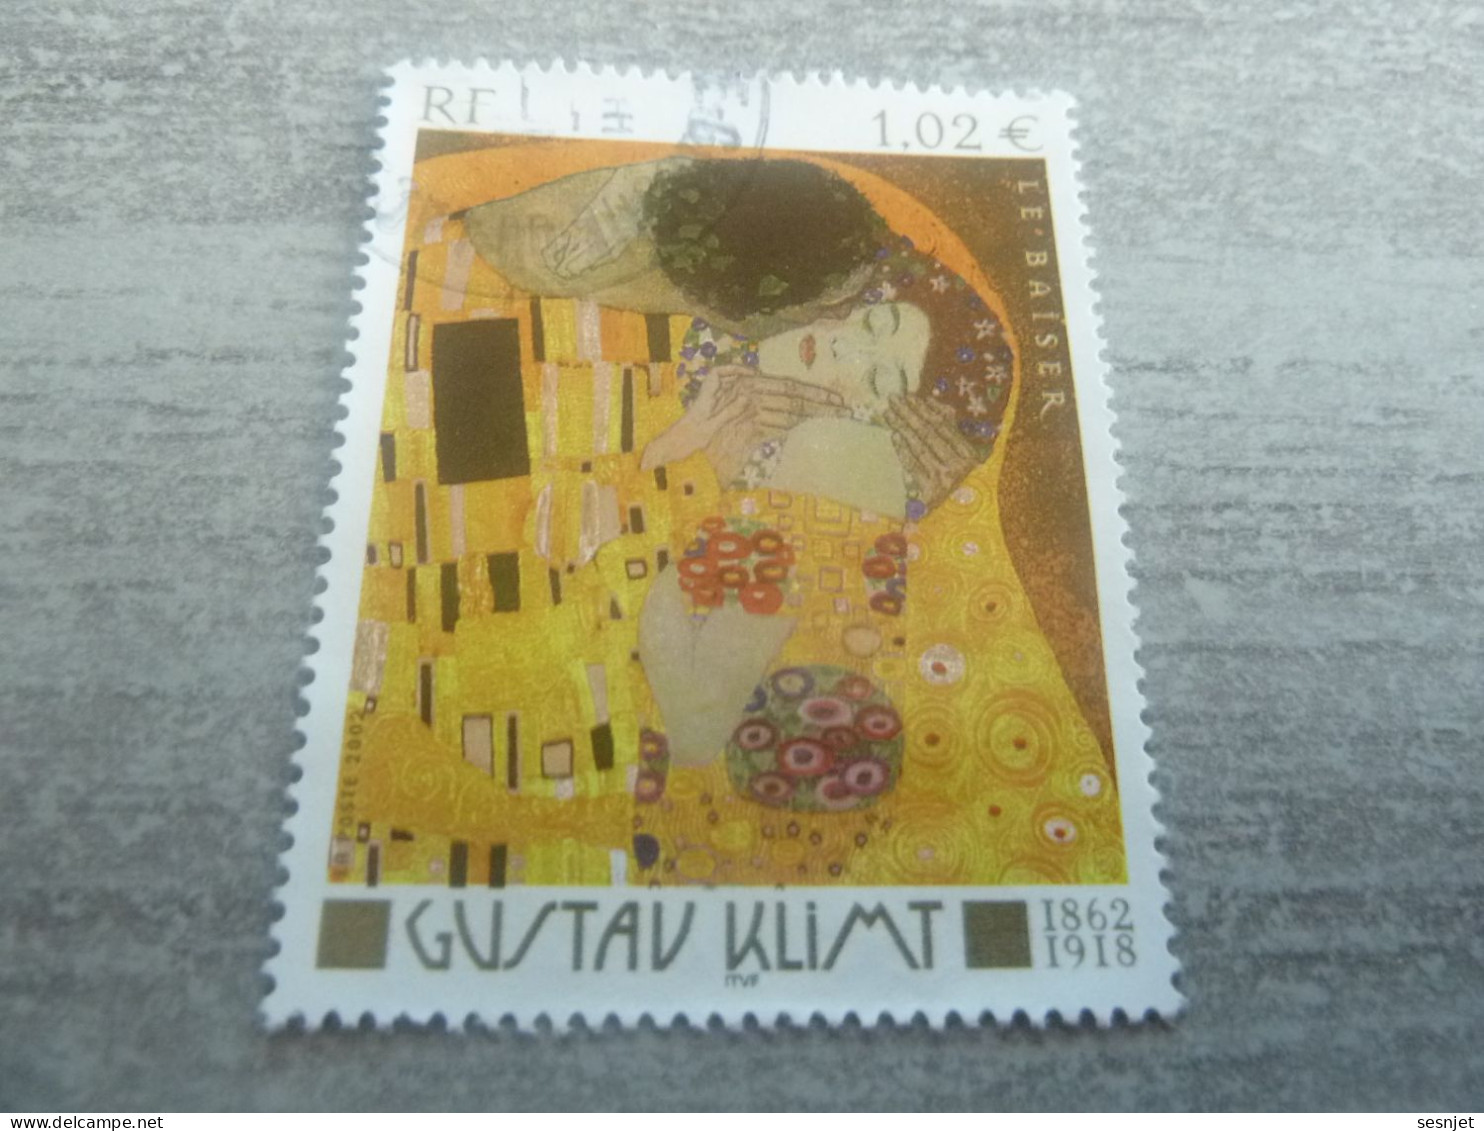 Gustav Klimt (1862-1918) - Le Baiser - 1.02 € - Yt 3461 - Multicolore - Oblitéré - Année 2002 - - Oblitérés